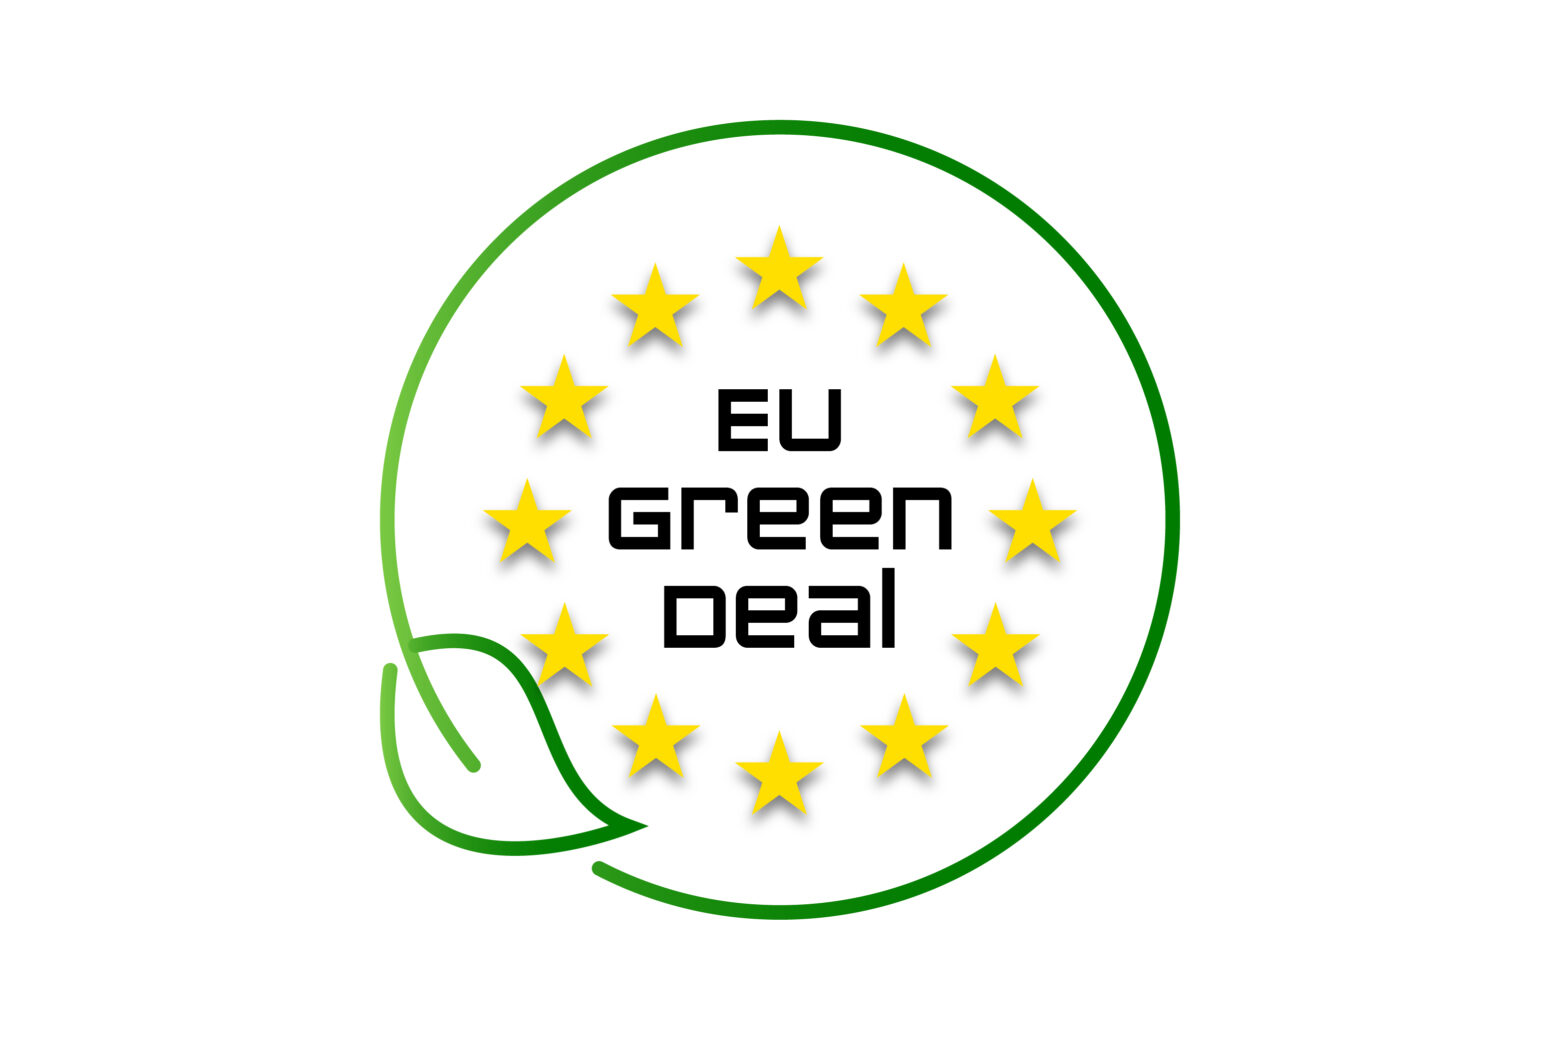 Logo del pacto verde europeo y la reducción de emisiones de metano